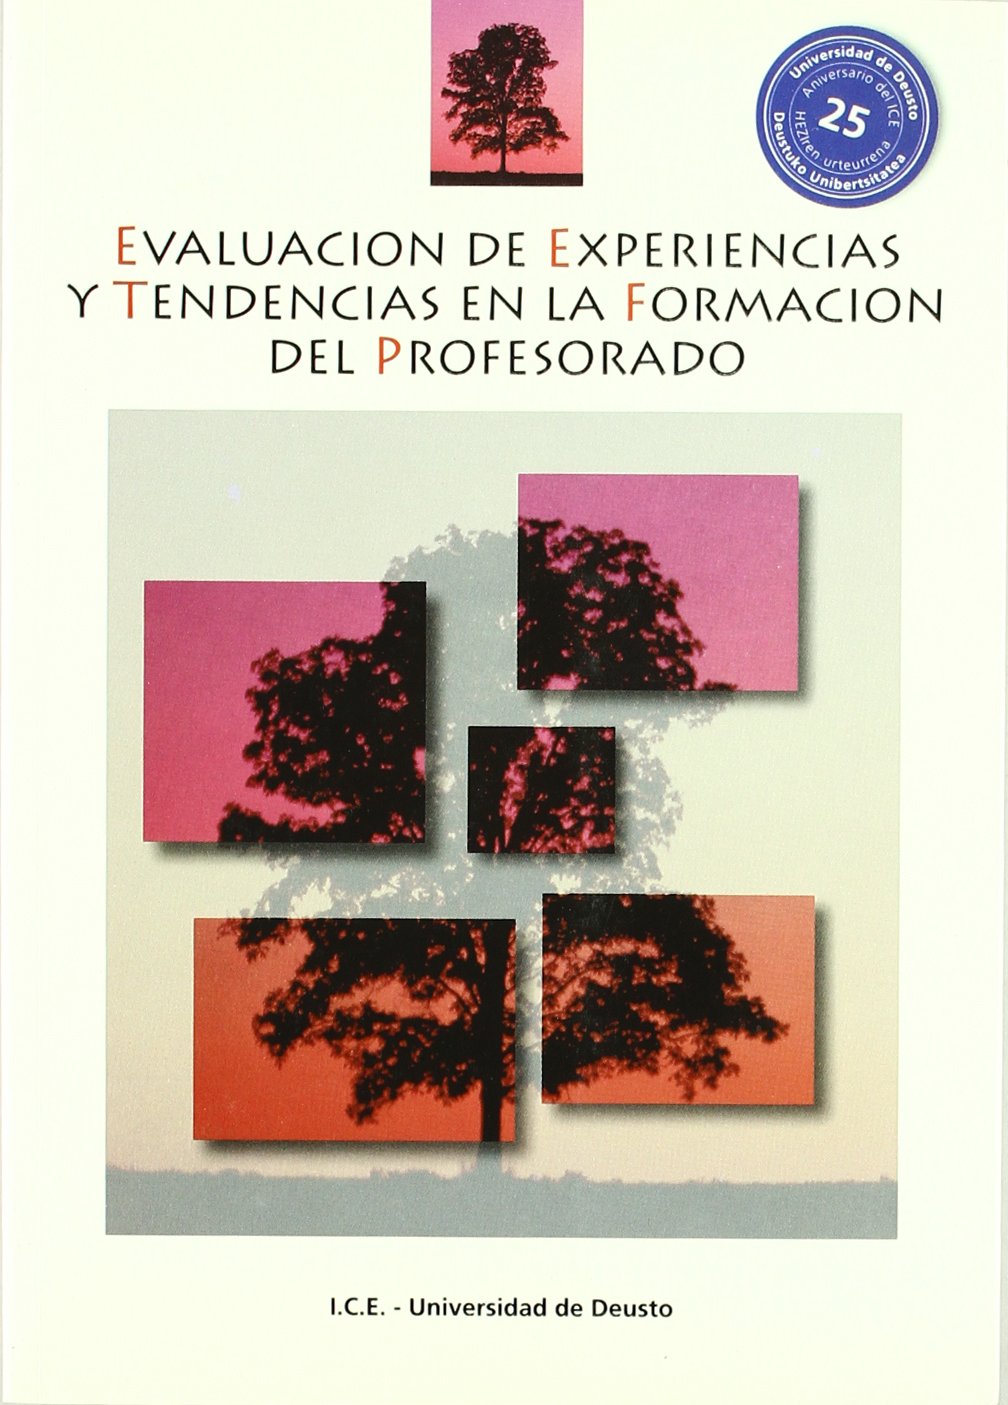 Imagen de portada del libro Evaluación de experiencias y tendencias en la formación del profesorado